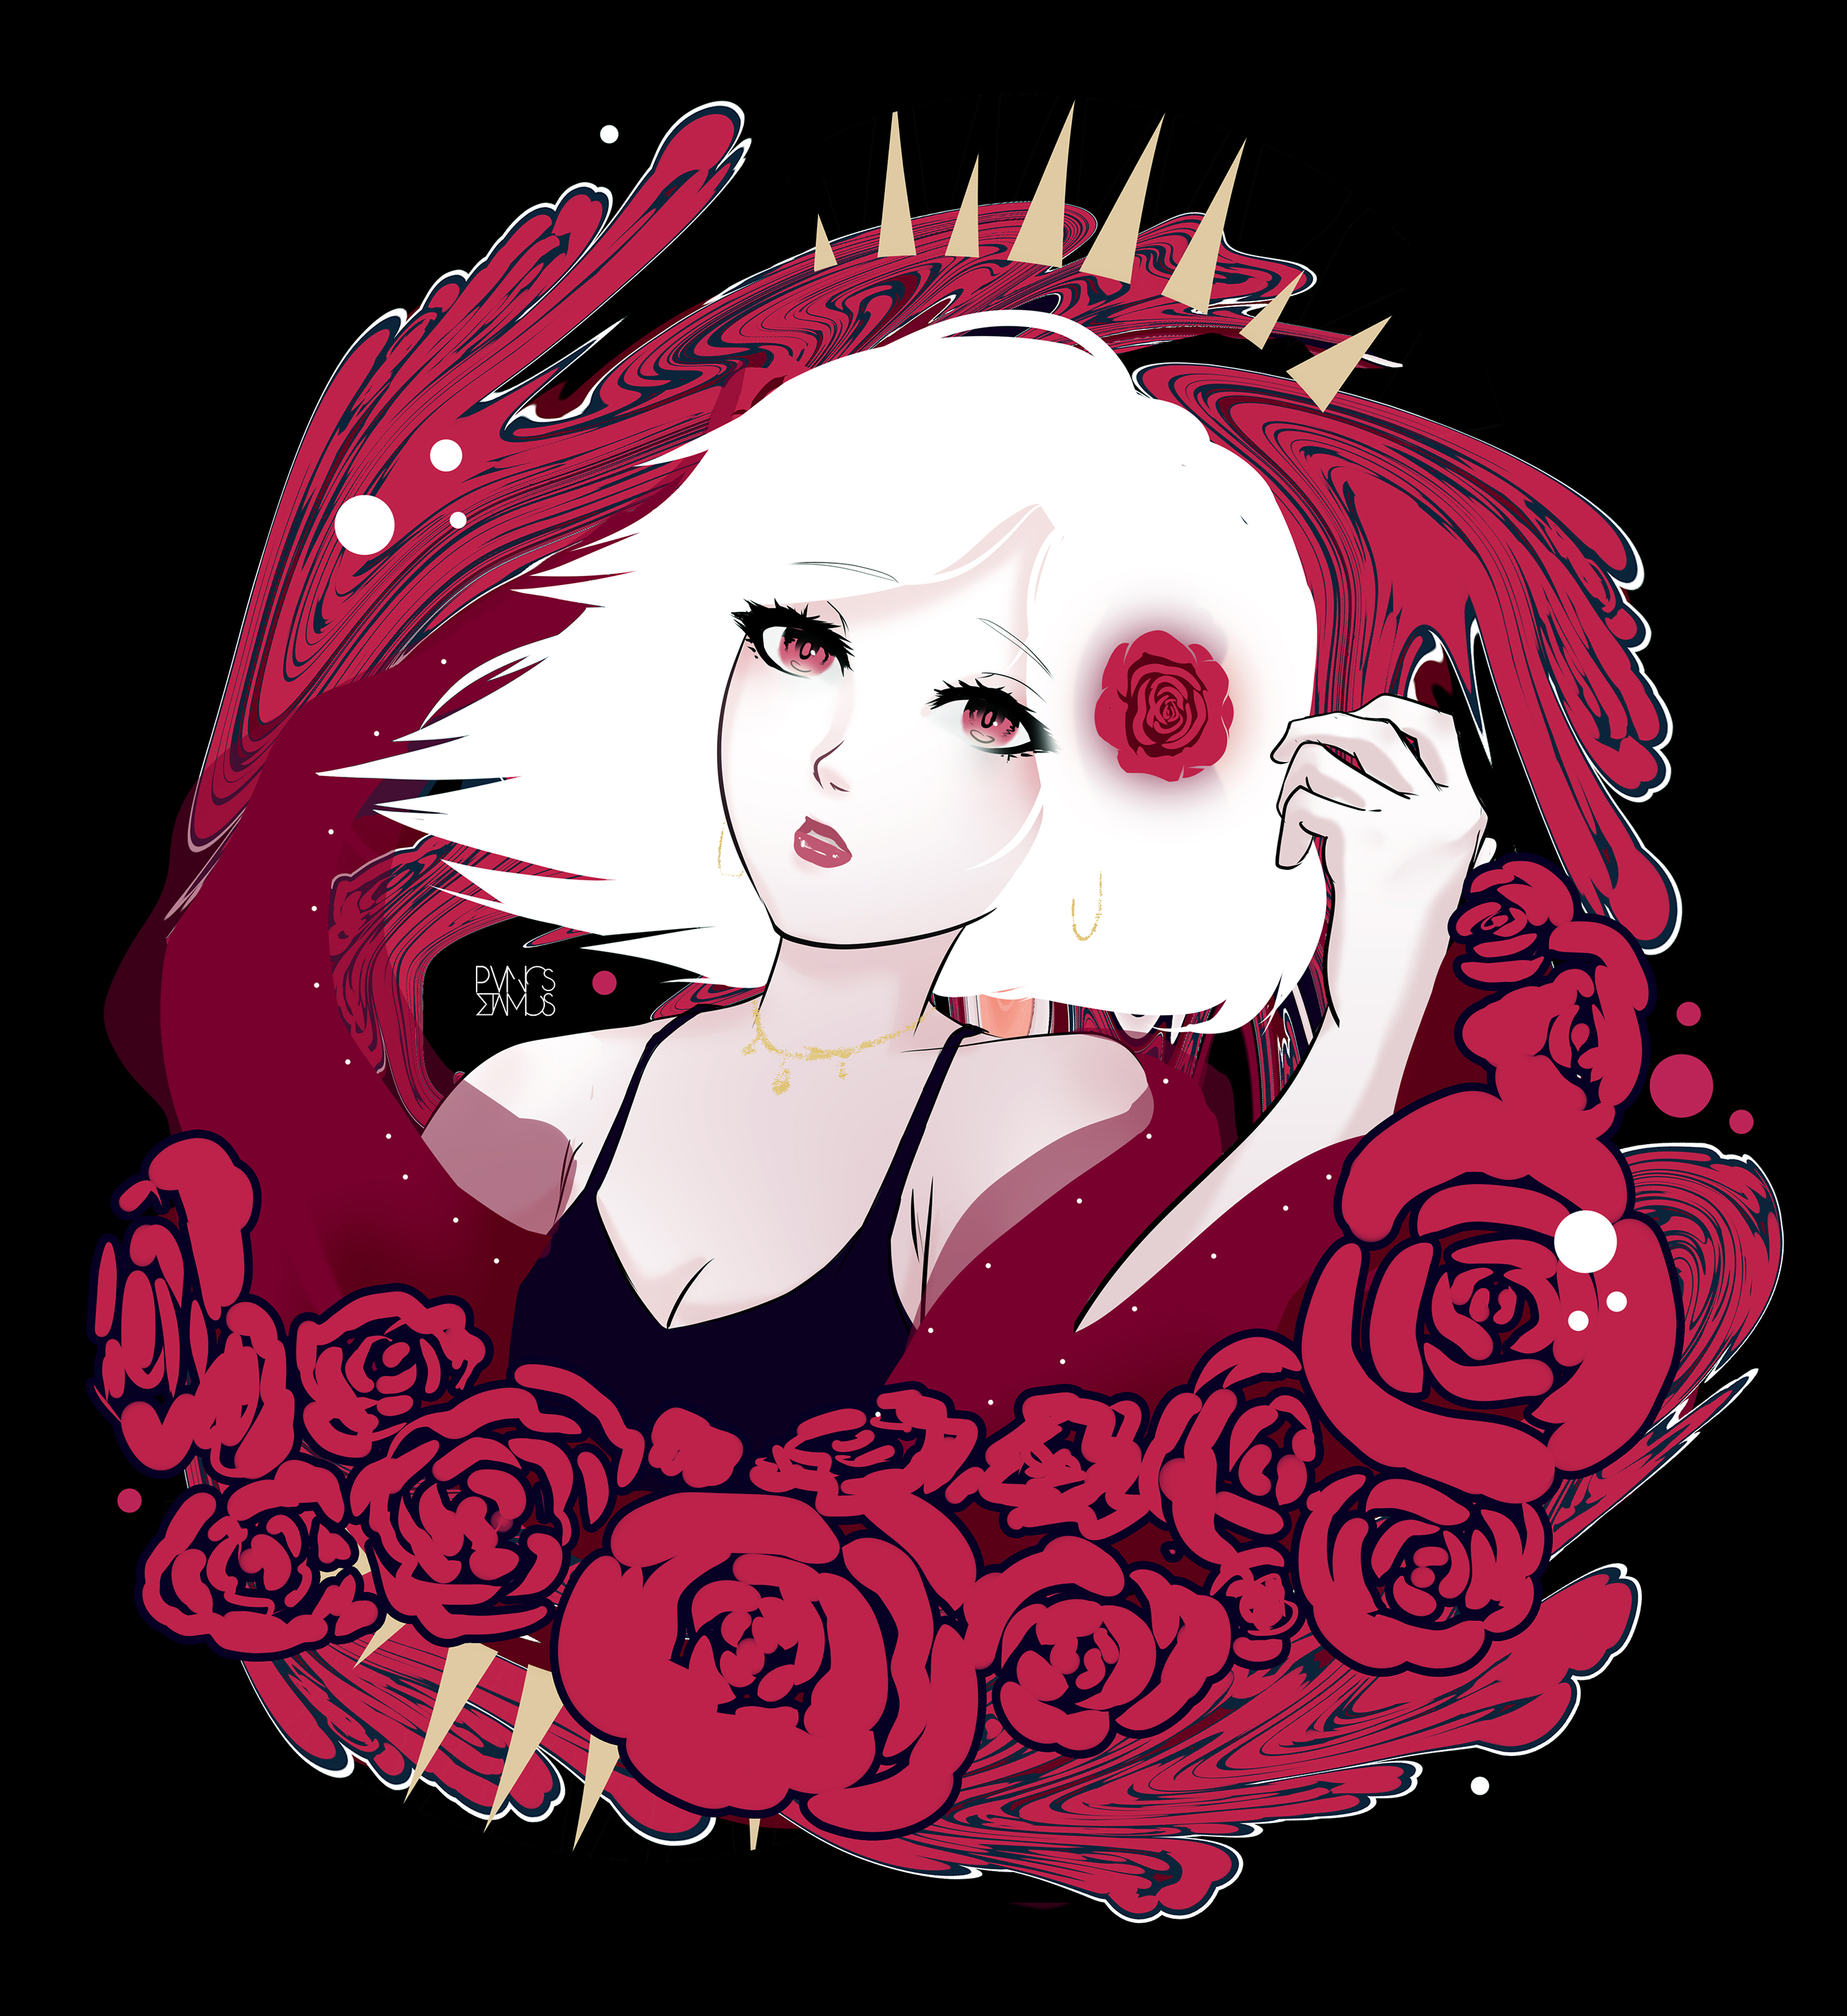 Anime 2620x2860 anime girls rose white hair red fantasy art illustration digital art love anime